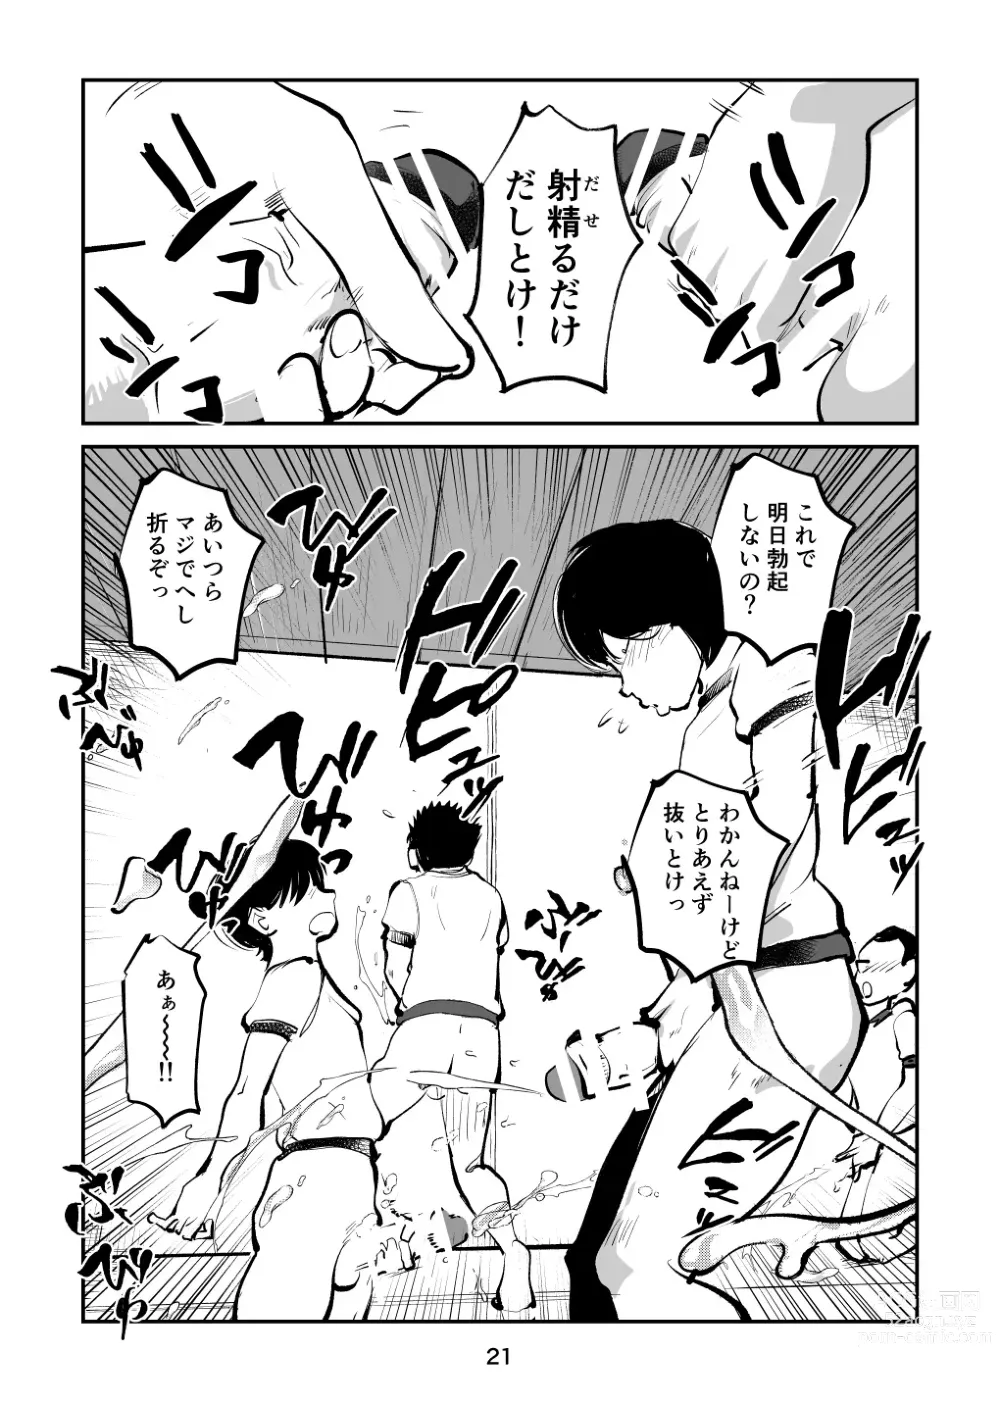 Page 21 of doujinshi Chinpo Shiikukakari 7